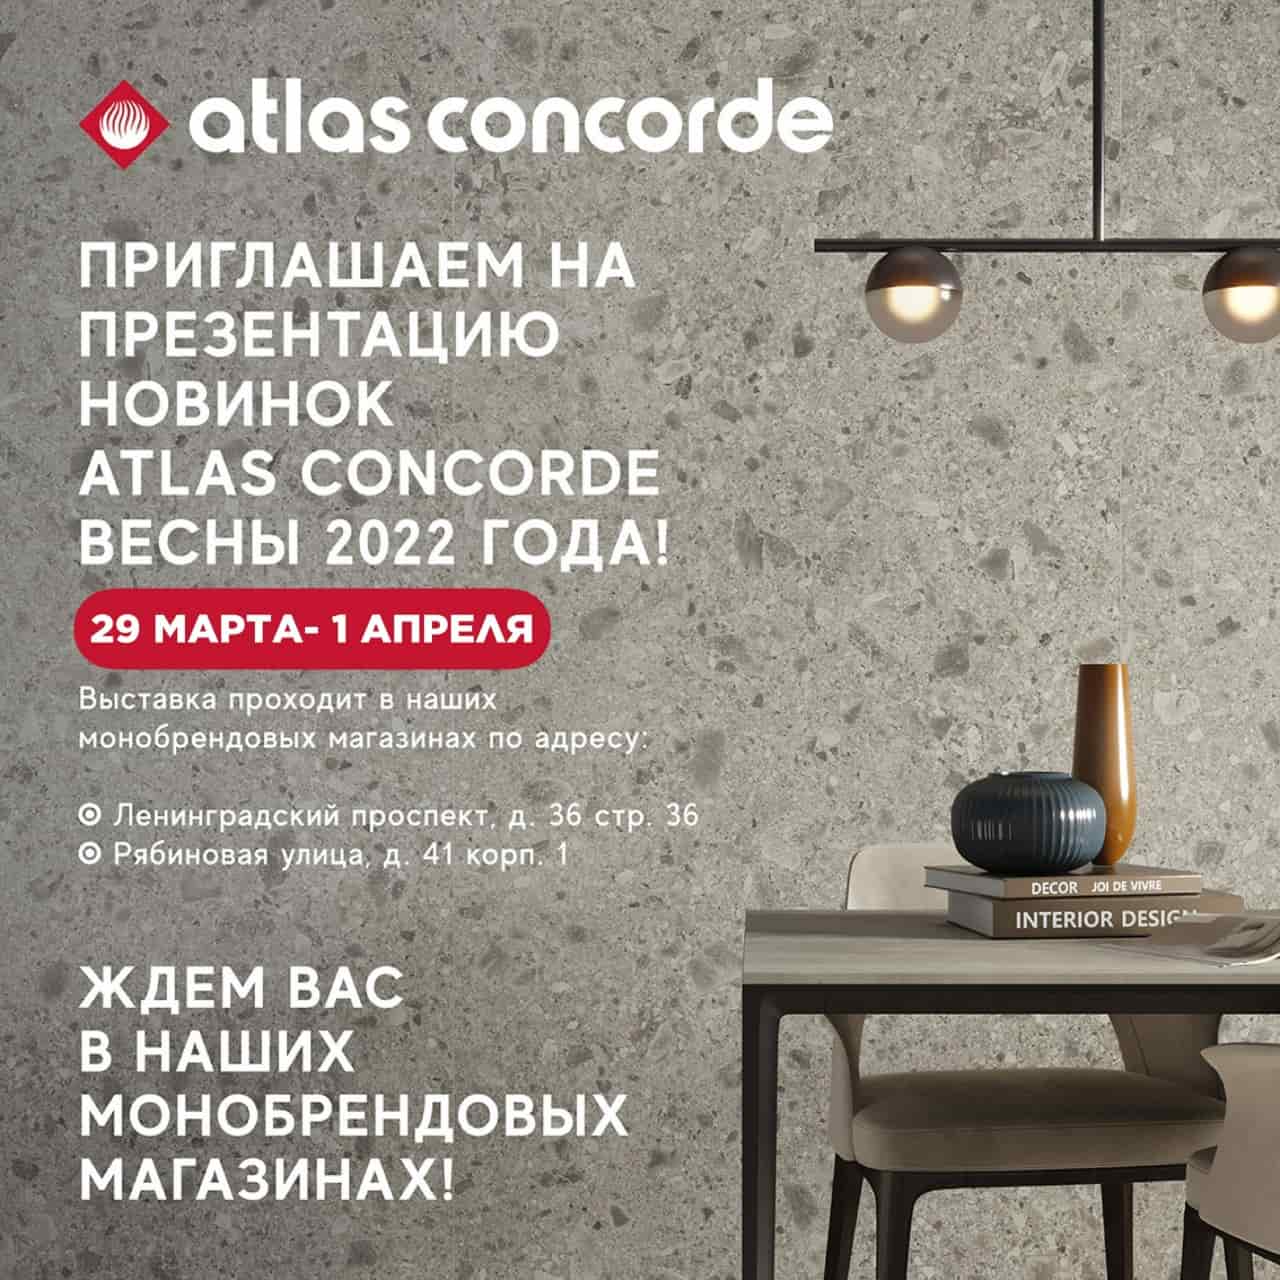 Презентация новинок Atlas Concorde (Весна 2022)